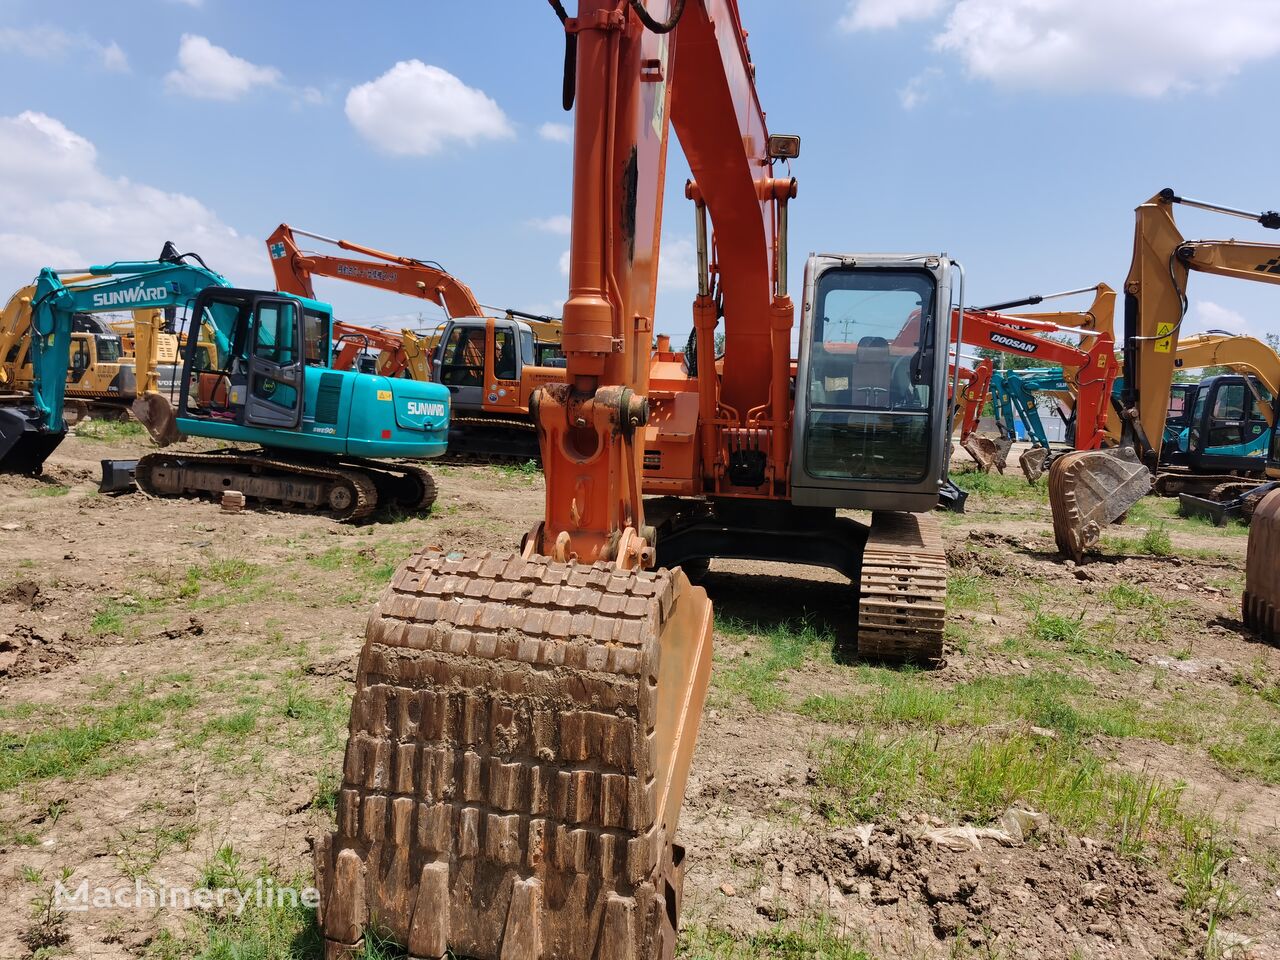 Hitachi ZX135 tracked excavator